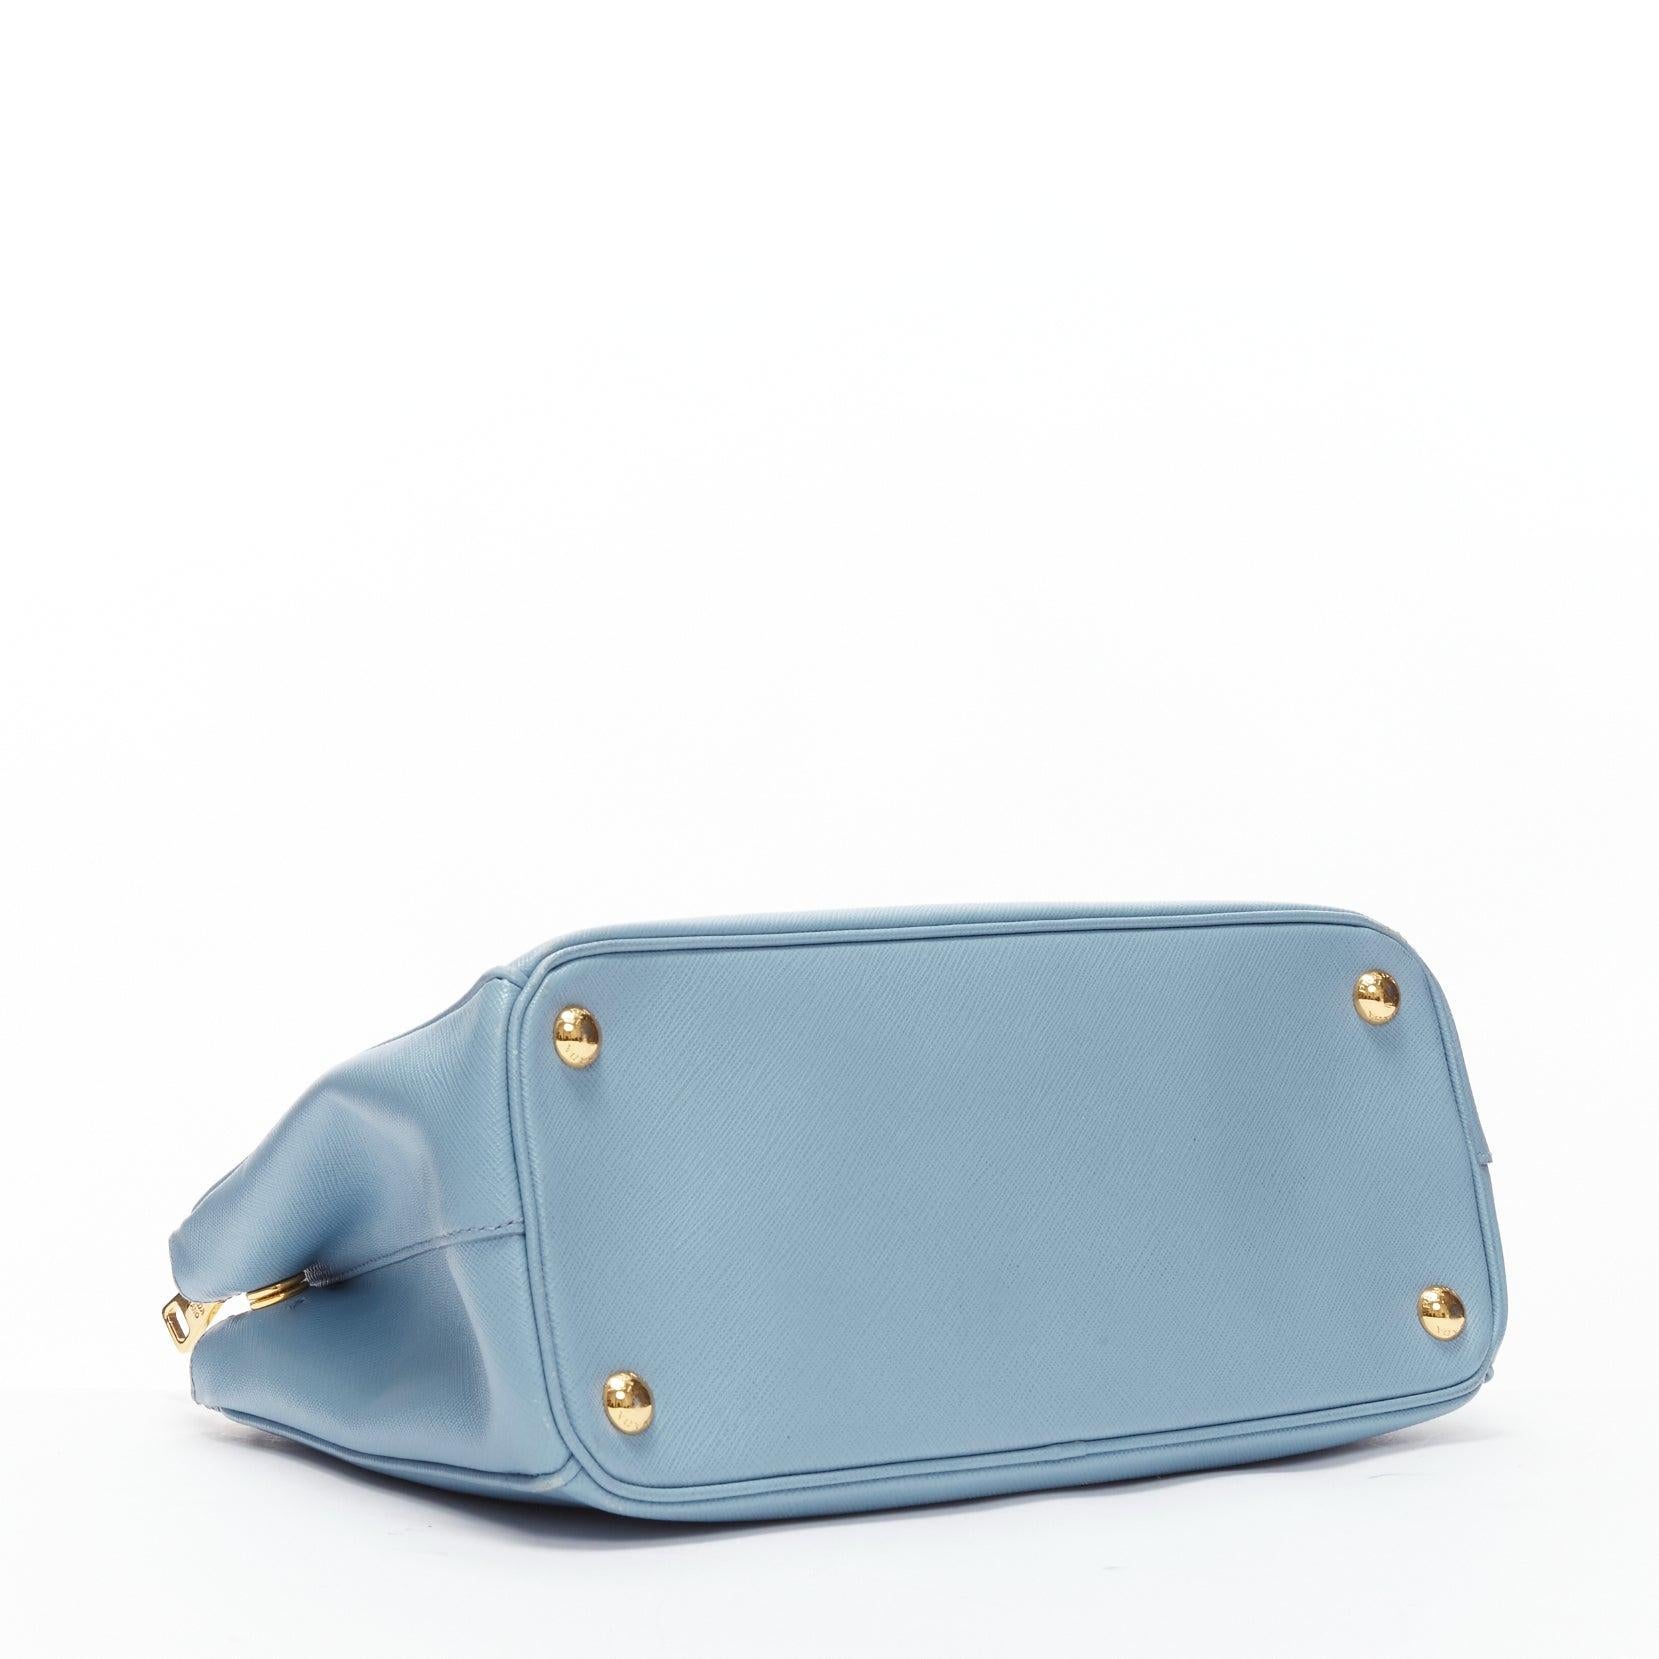 PRADA Galleria light blue saffiano leather triangle logo shoulder tote bag 2